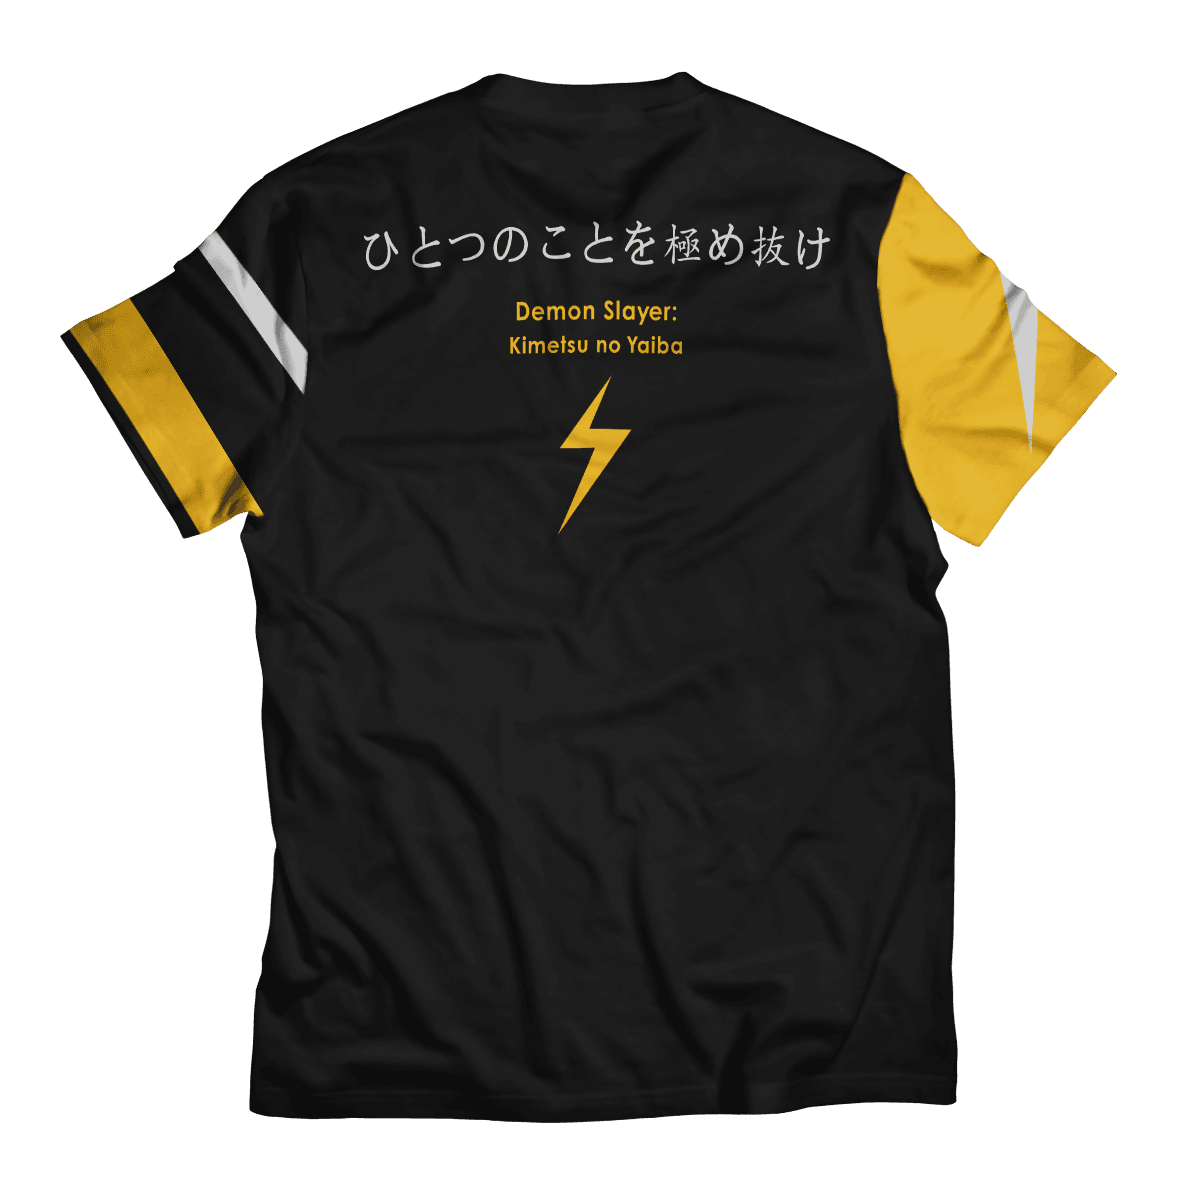 Thunder Zenitsu Unisex T-Shirt Official Demon Slayer Merch